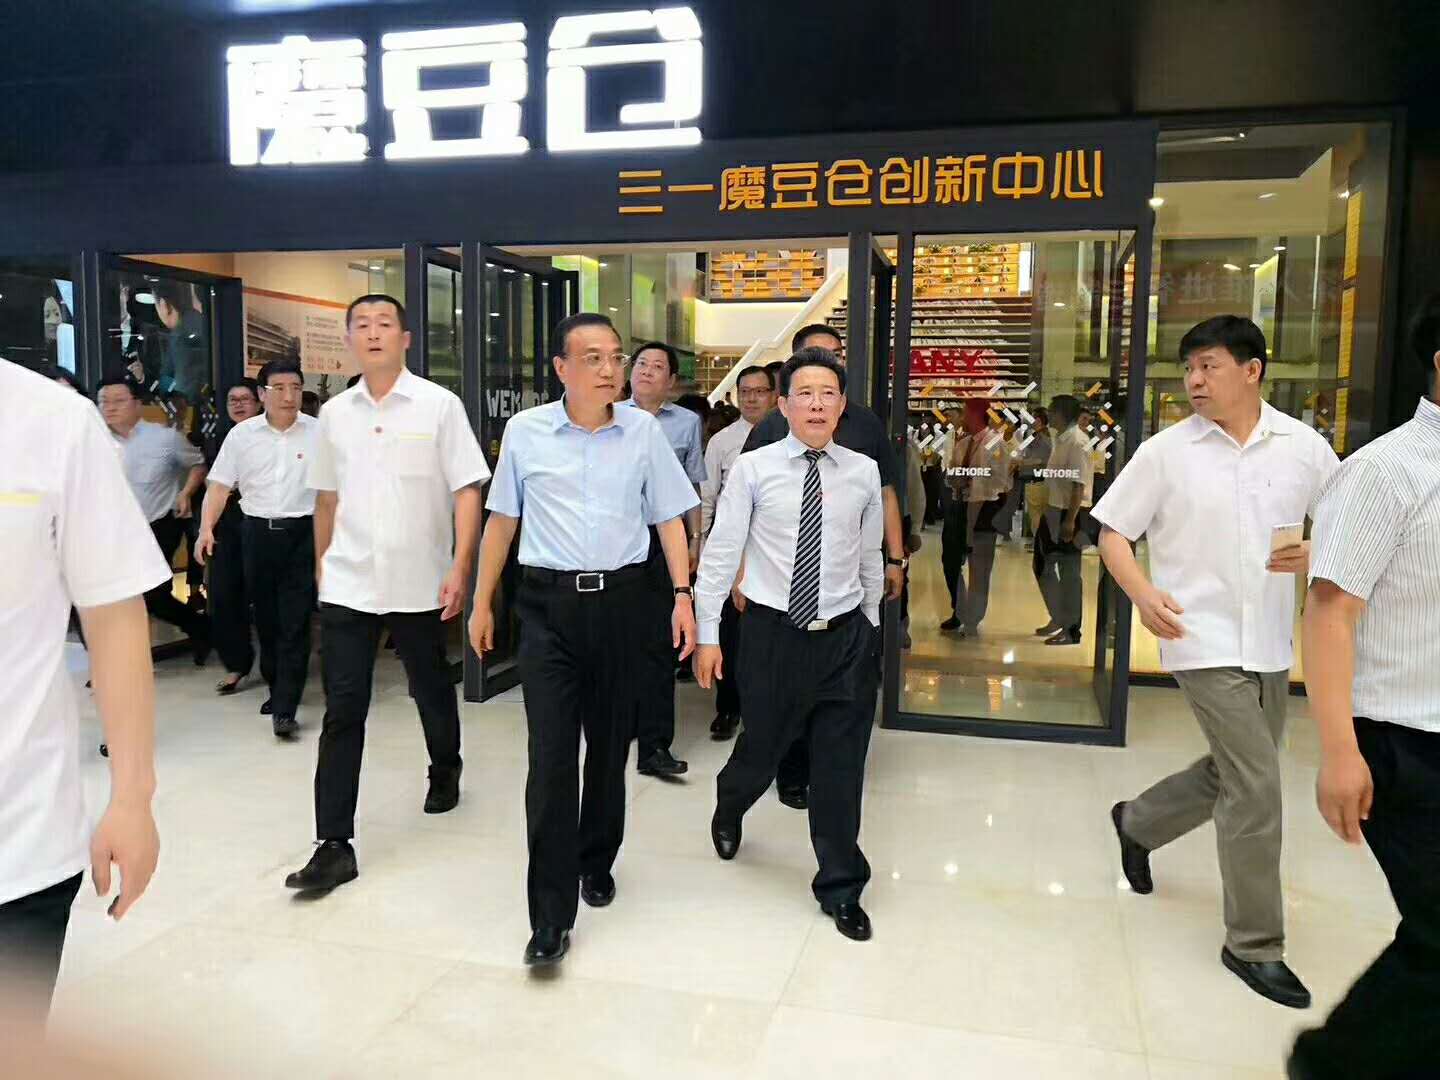 نرحب ترحيبا حارا برئيس الوزراء السيد. زيارة Keqiang Lee إلى مبنى المكاتب CSCERAMIC.